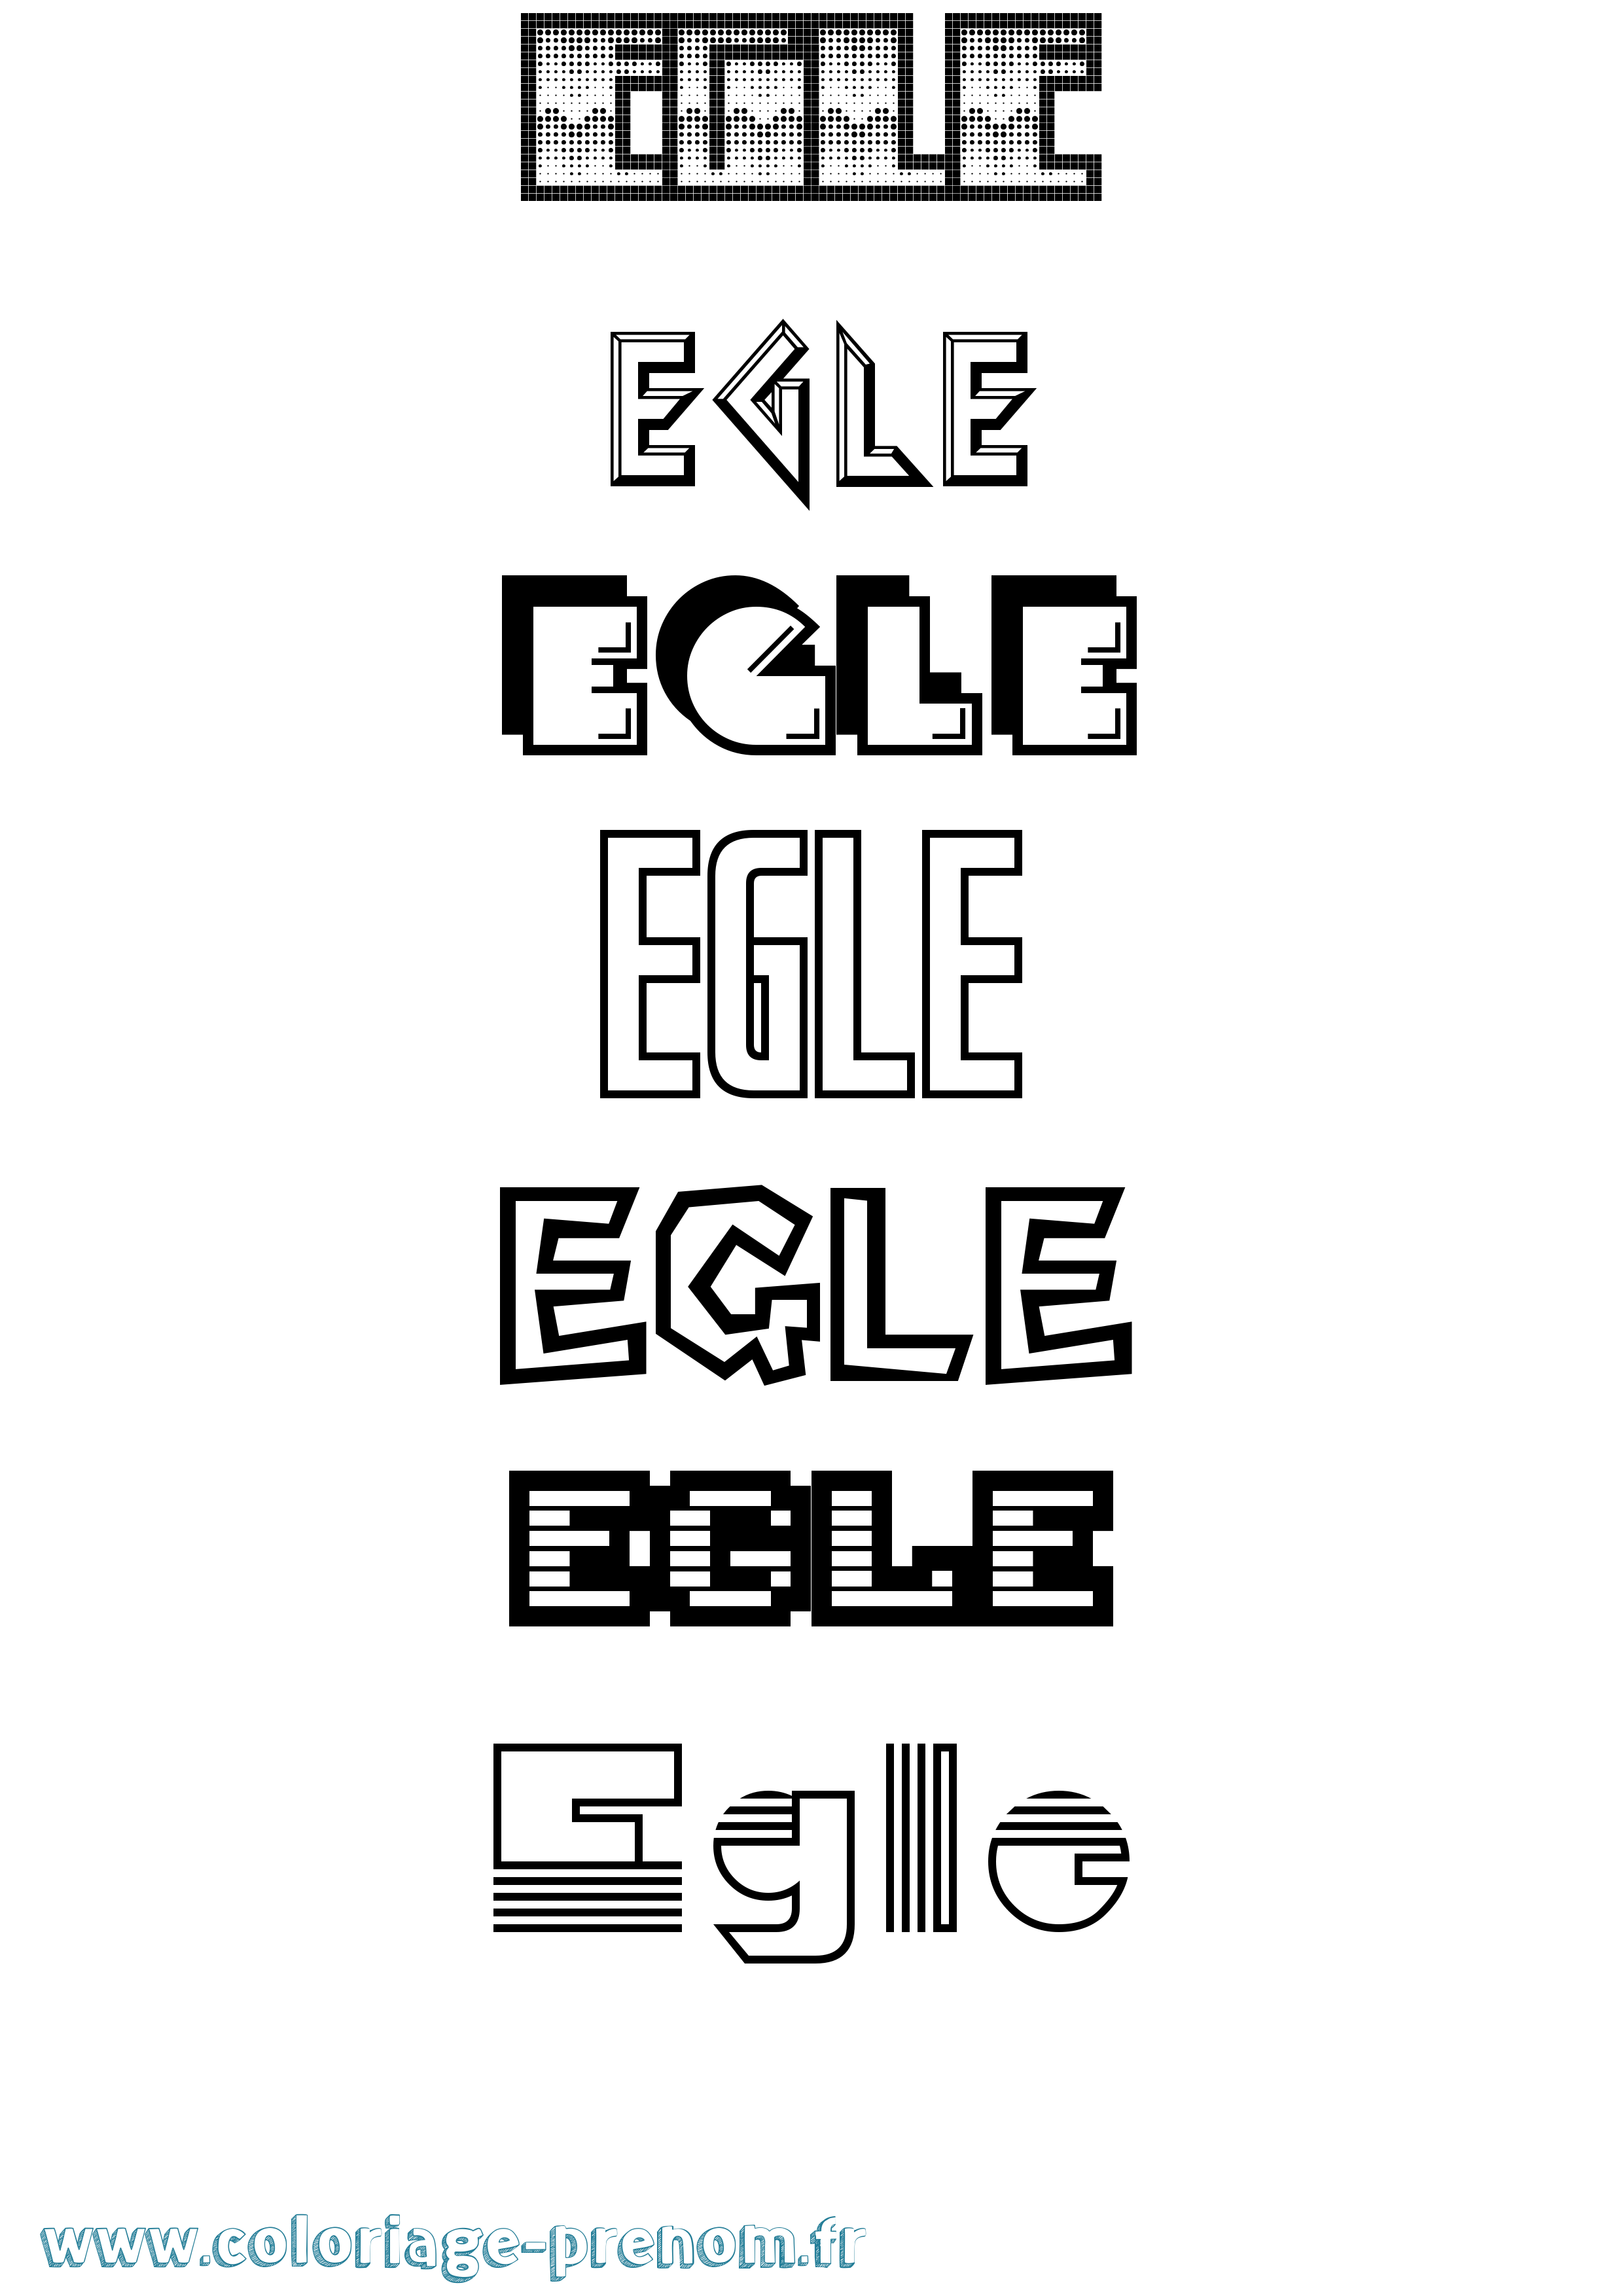 Coloriage prénom Egle Jeux Vidéos